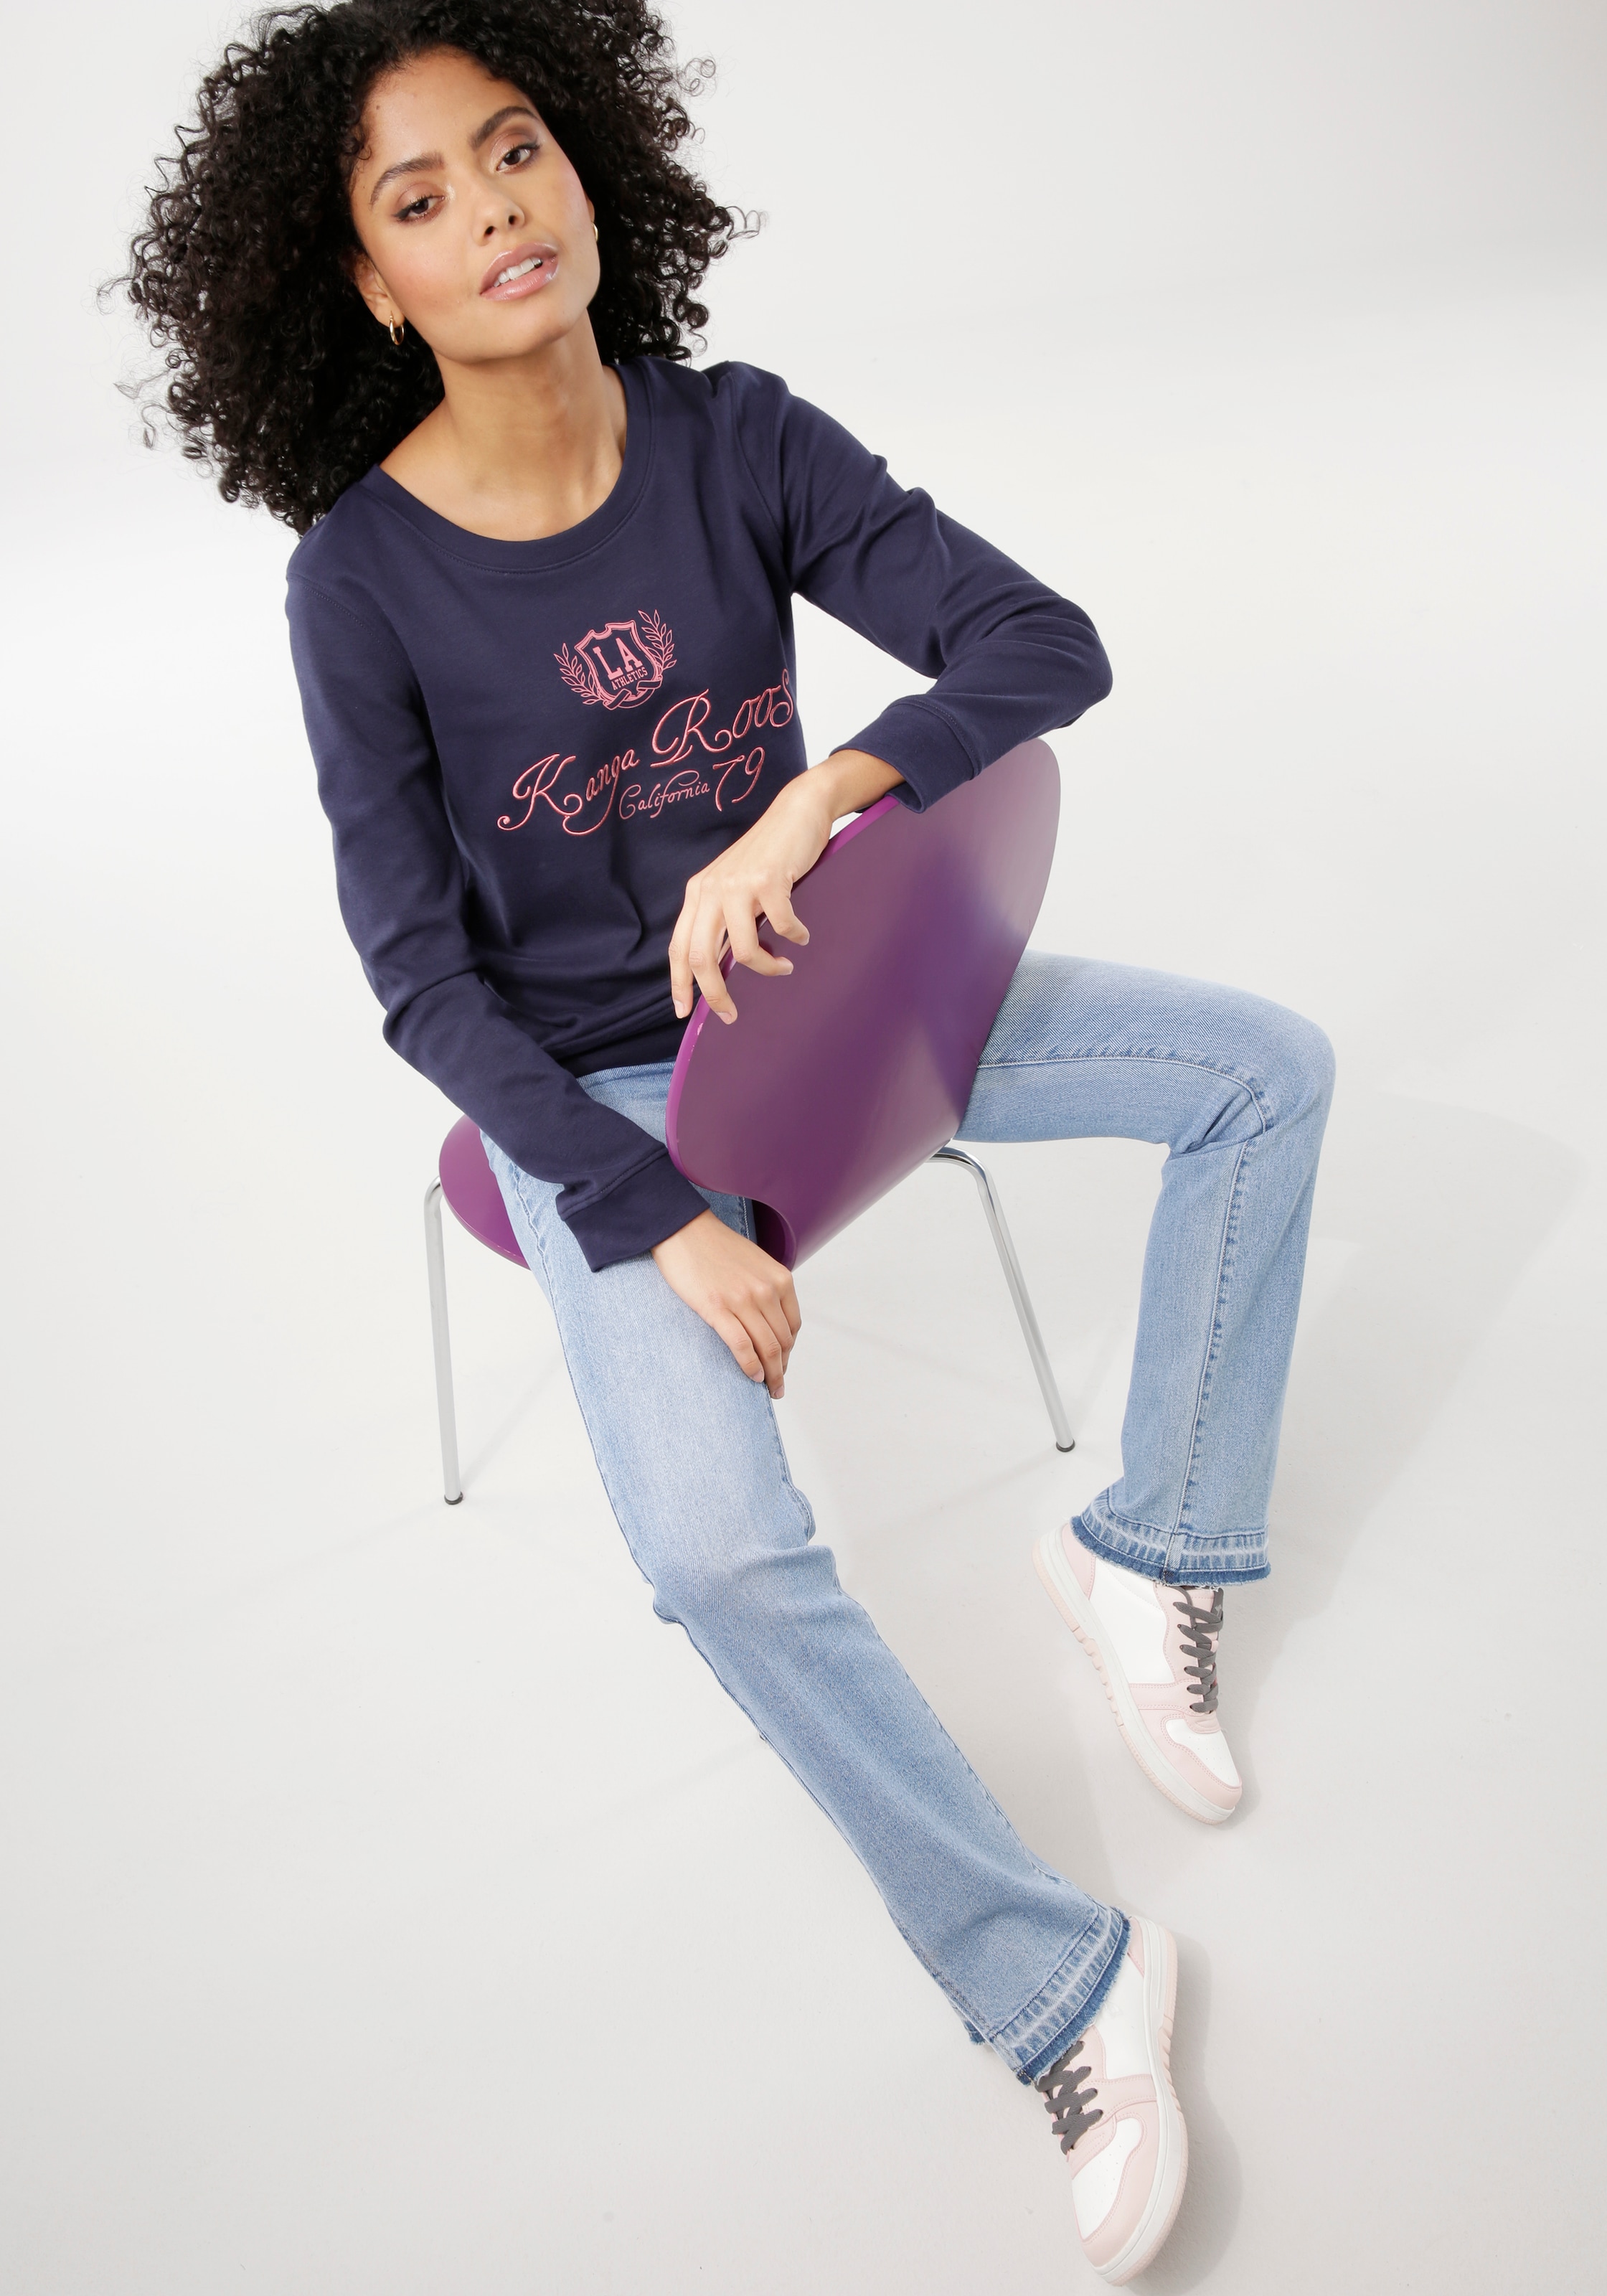 | Logo-Druck BAUR im KangaROOS trendigem Sweater, bestellen mit Collage-Stil neuen